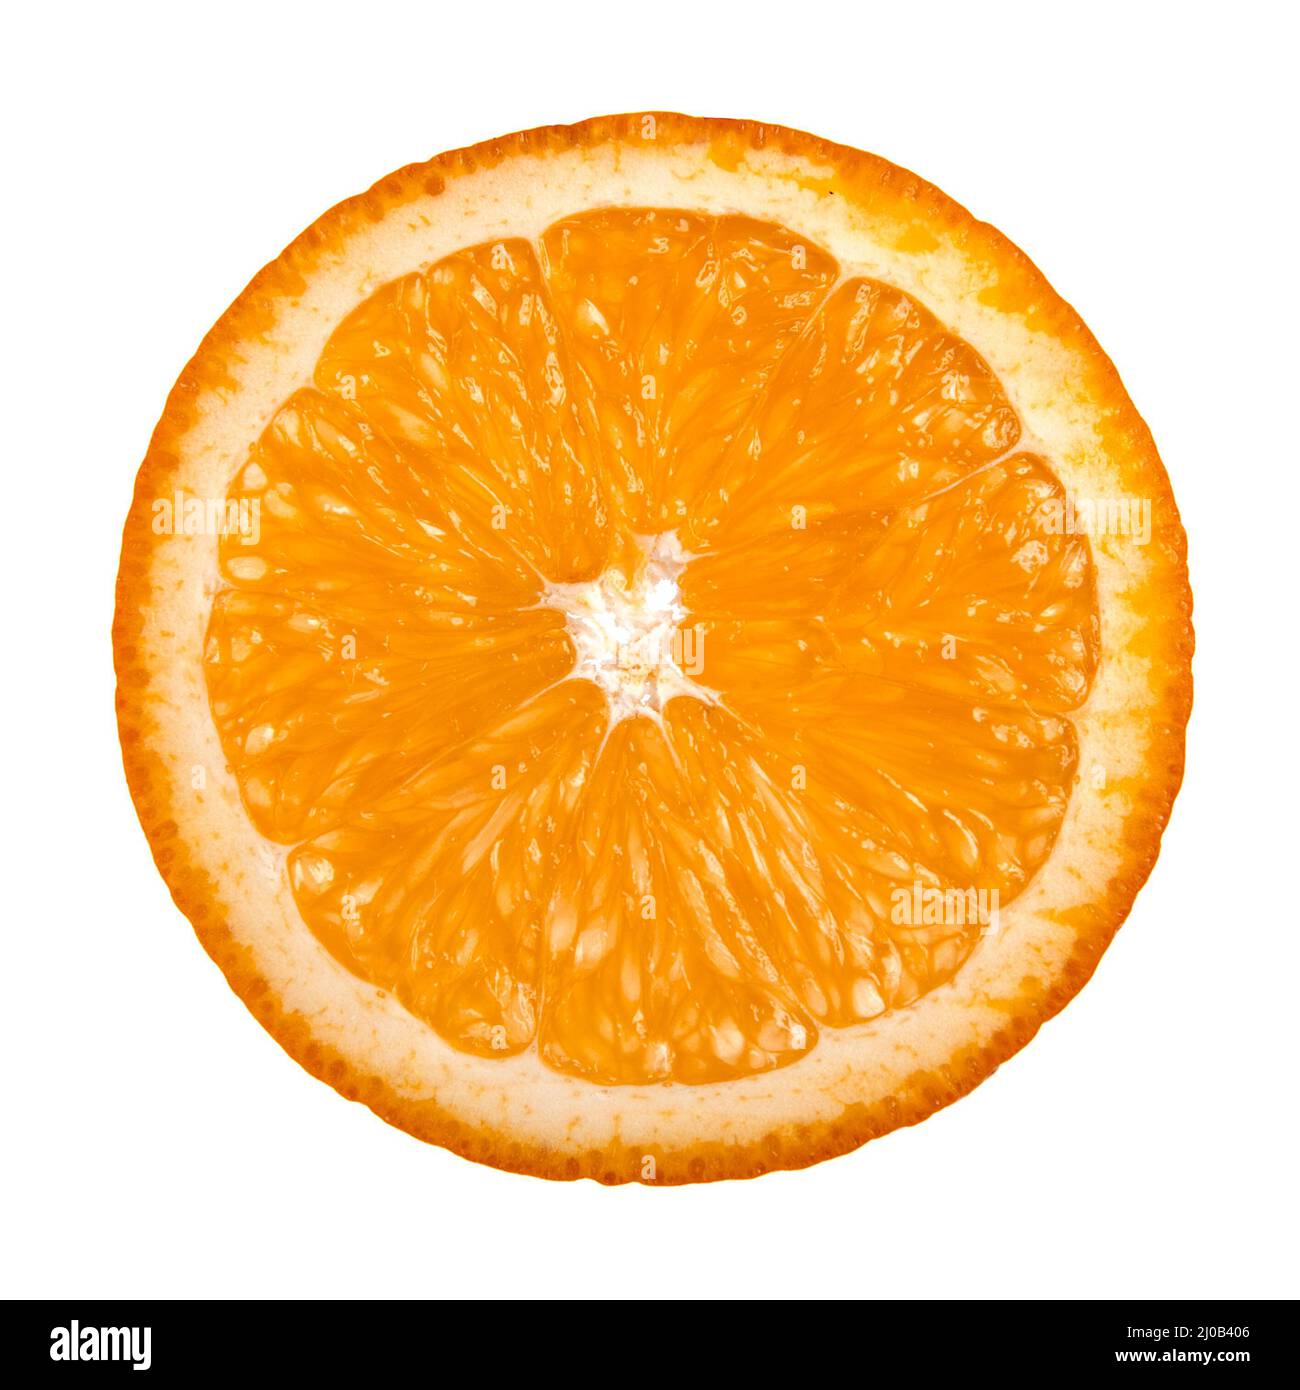 Sweet orange fruit Stock Photo